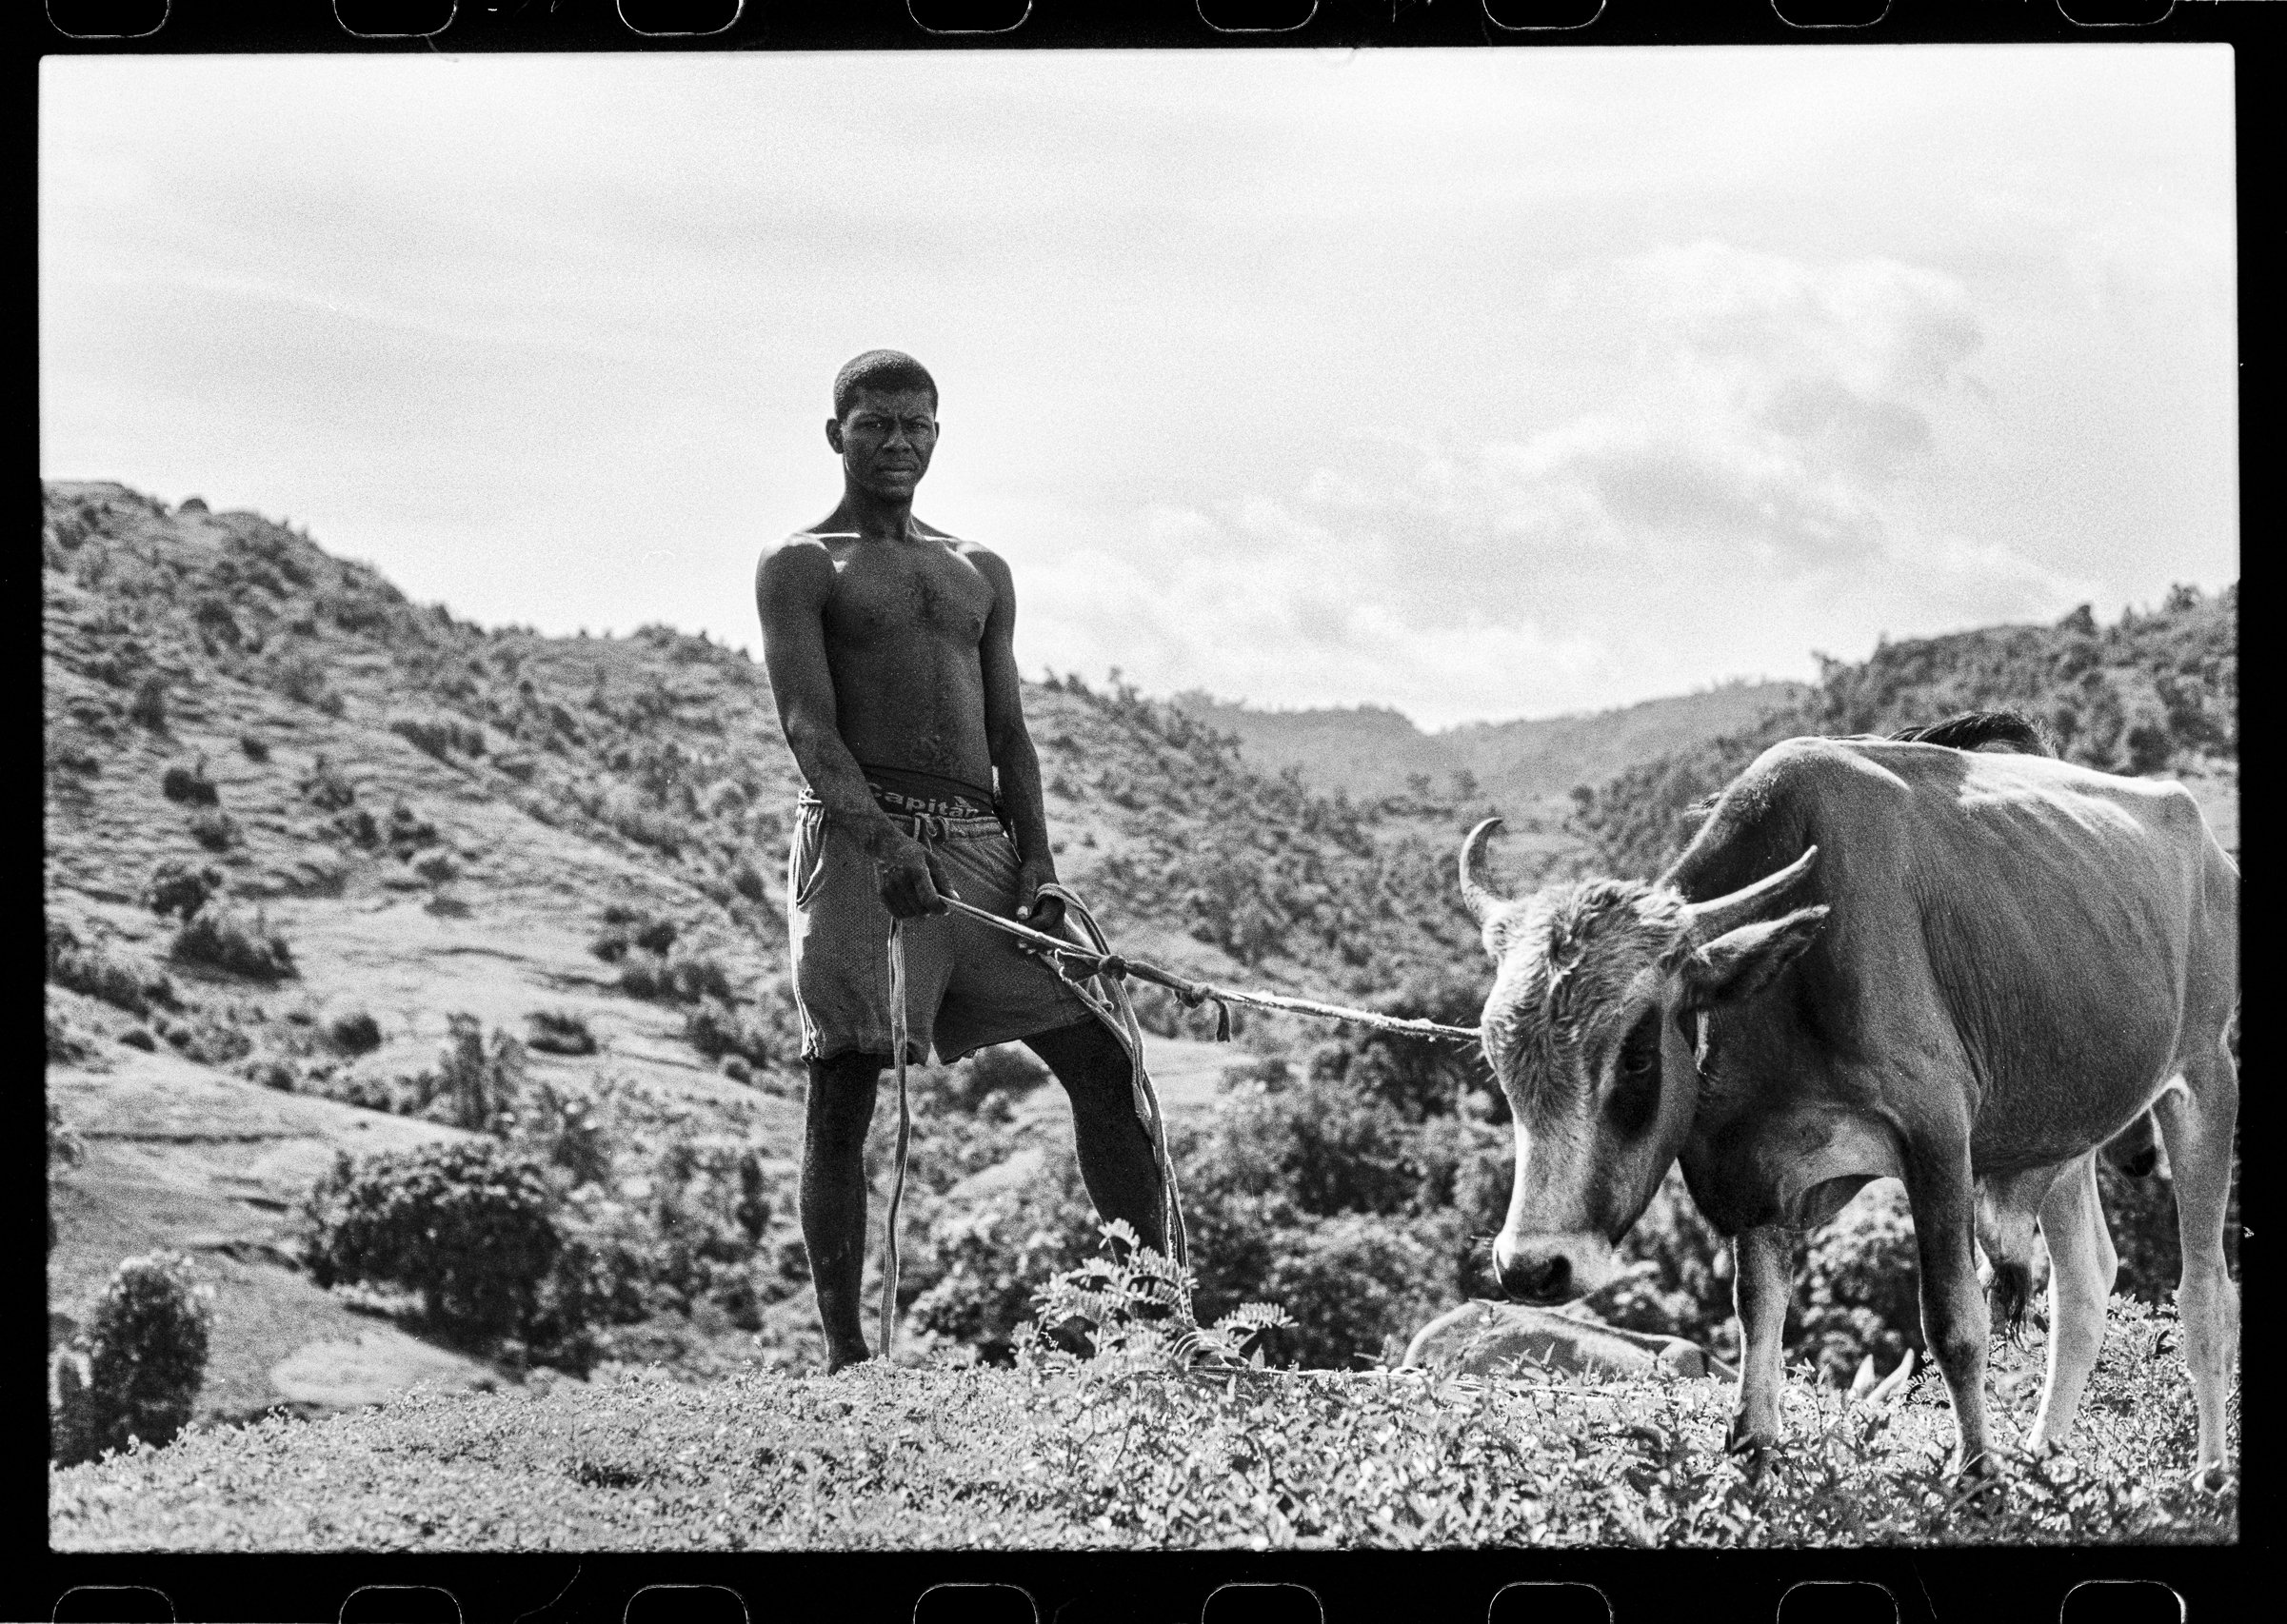 Haiti-Portraits-006-1.jpg